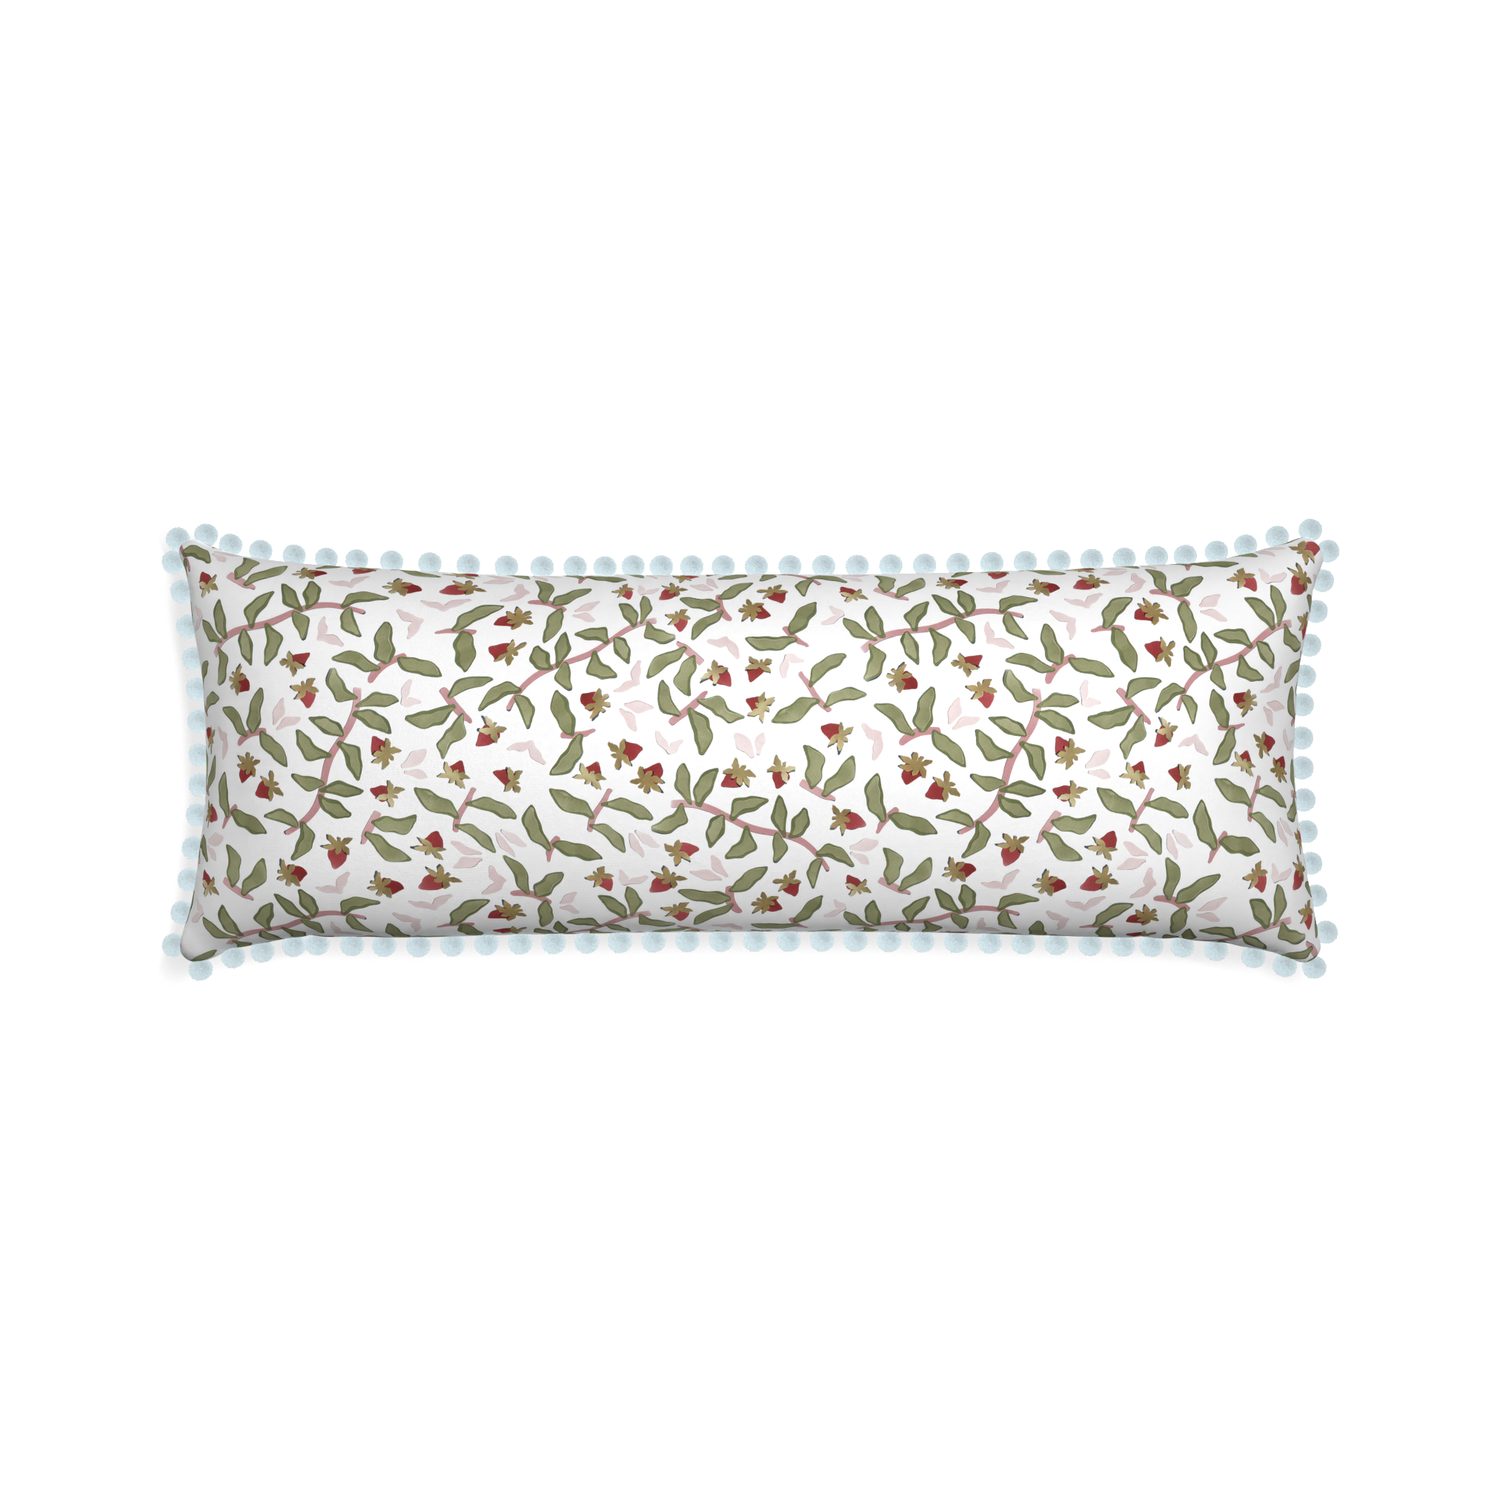 Xl-lumbar nellie custom pillow with powder pom pom on white background